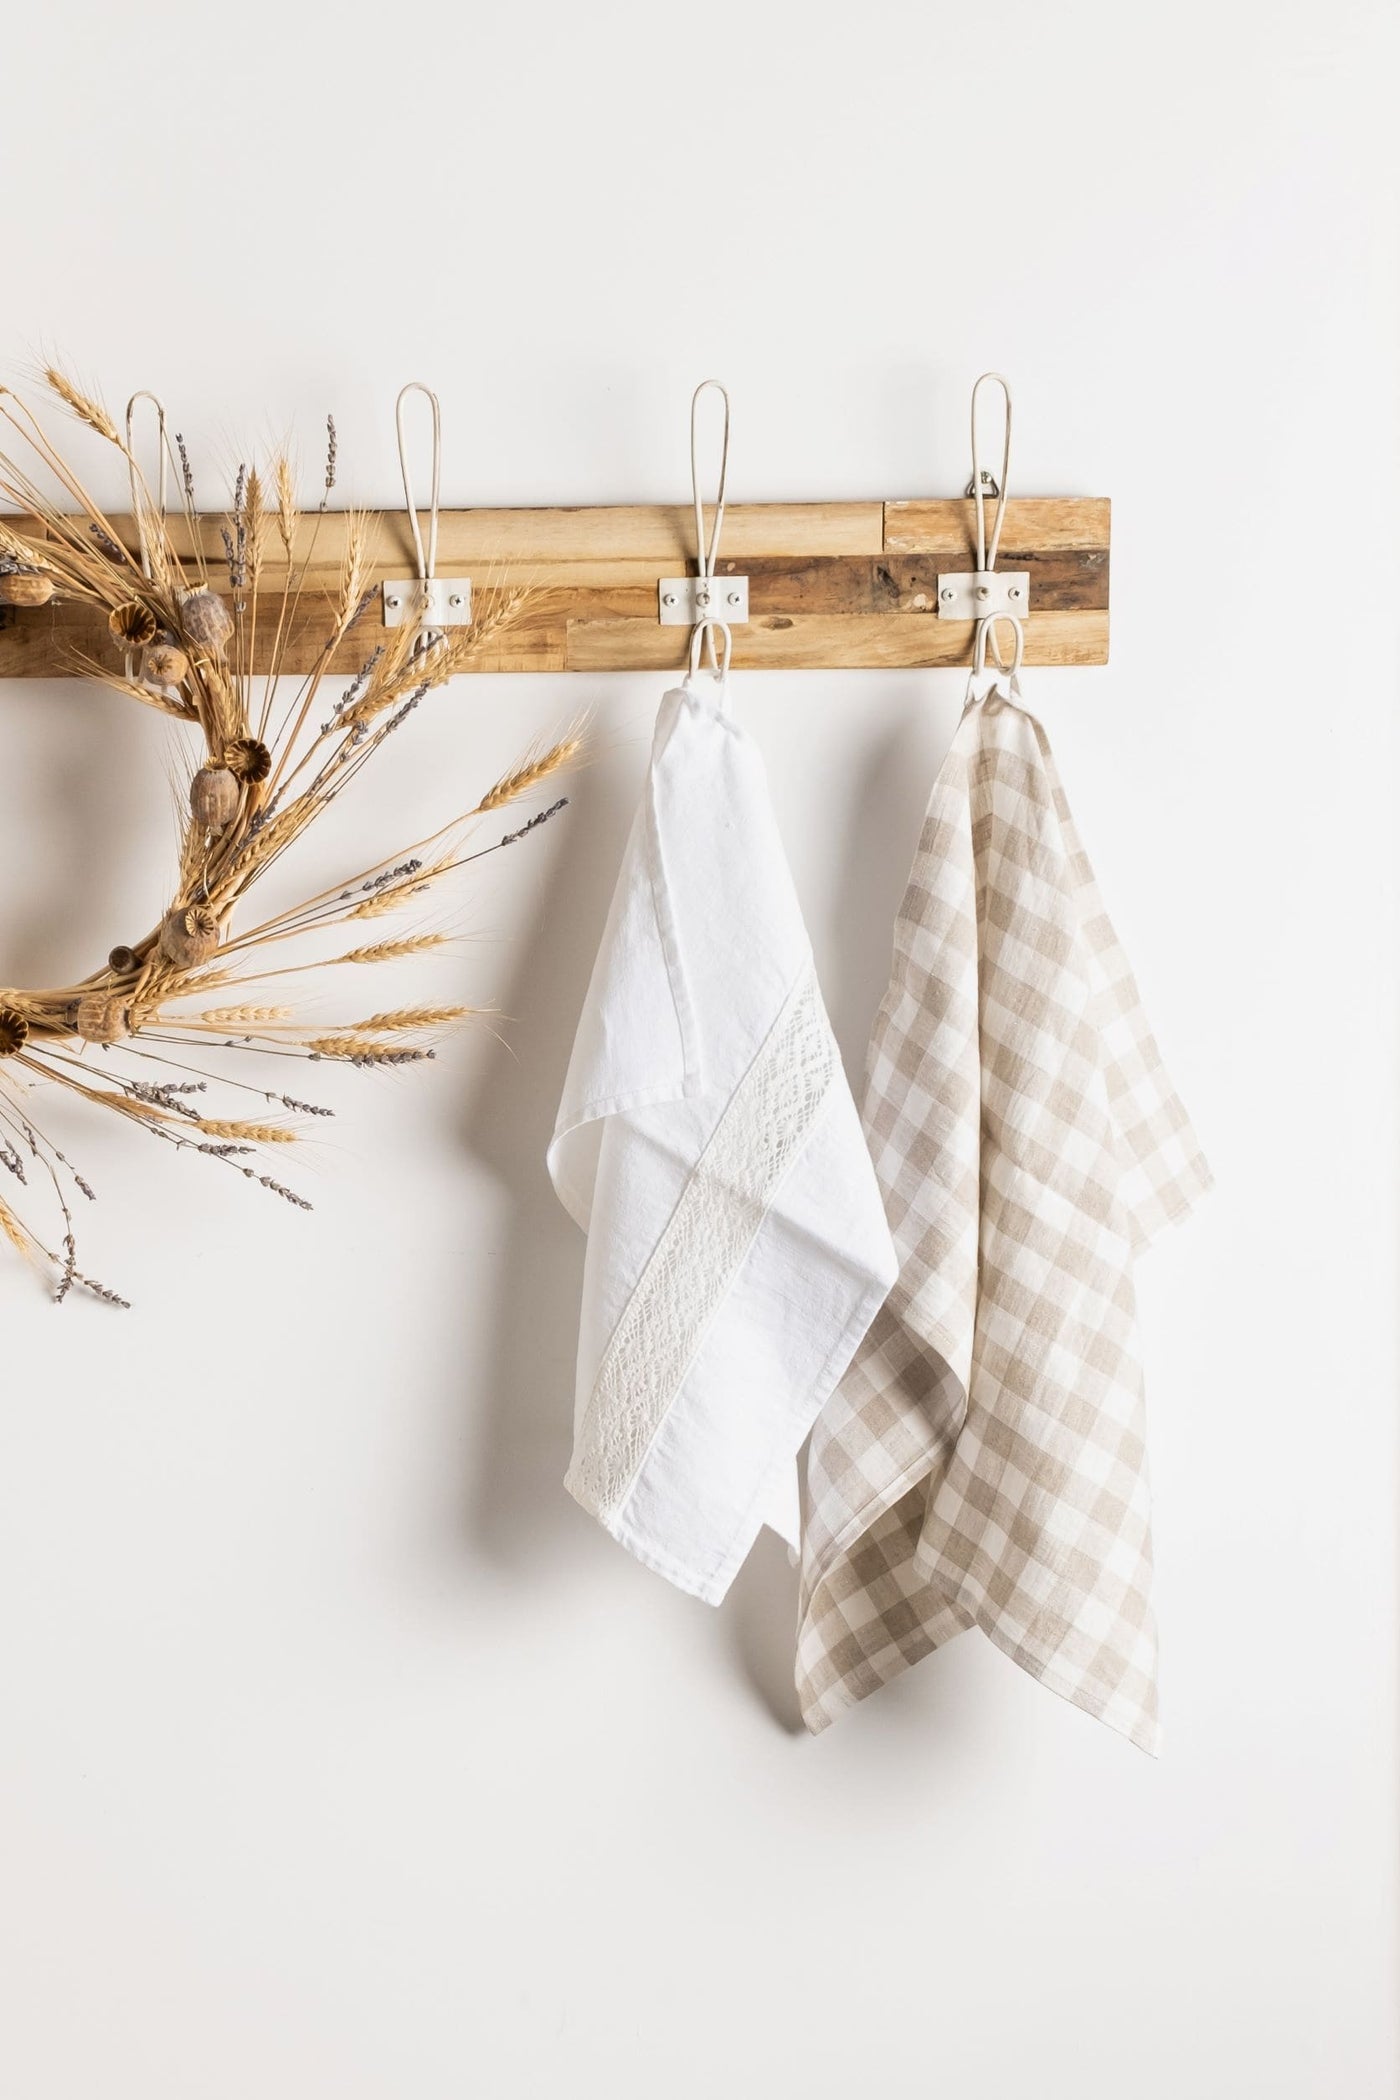 Kitchen Towels - LinenBarn